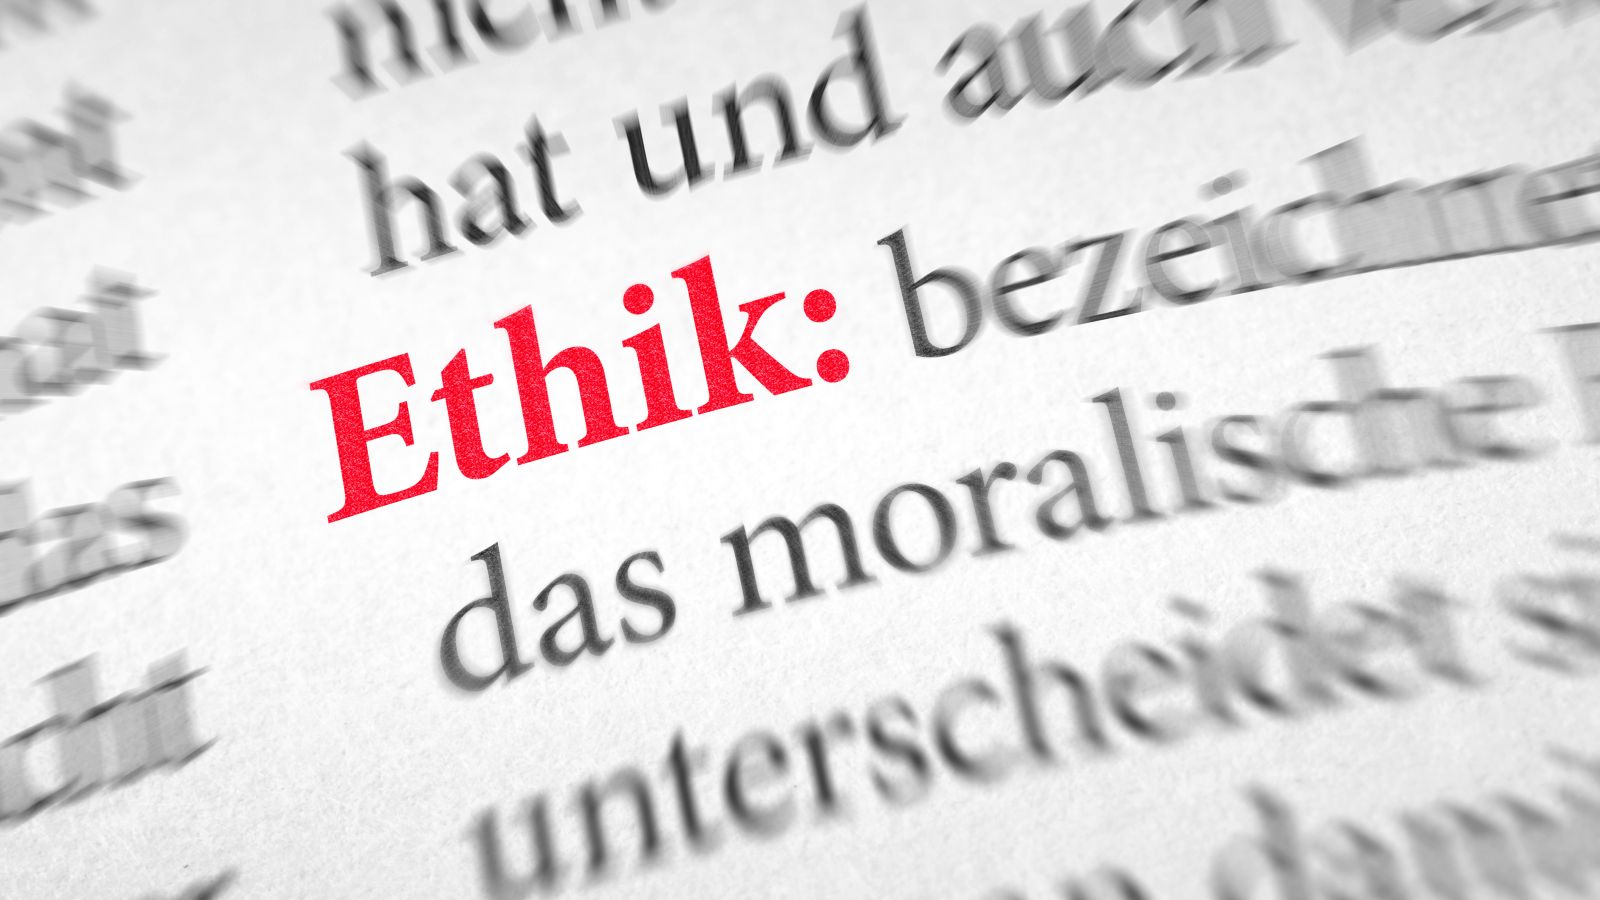 Ausschnitt aus einem Wörterbuch zum Begriff Ethik, das Wort Ethik ist in roten Buchstaben hervorgehoben.